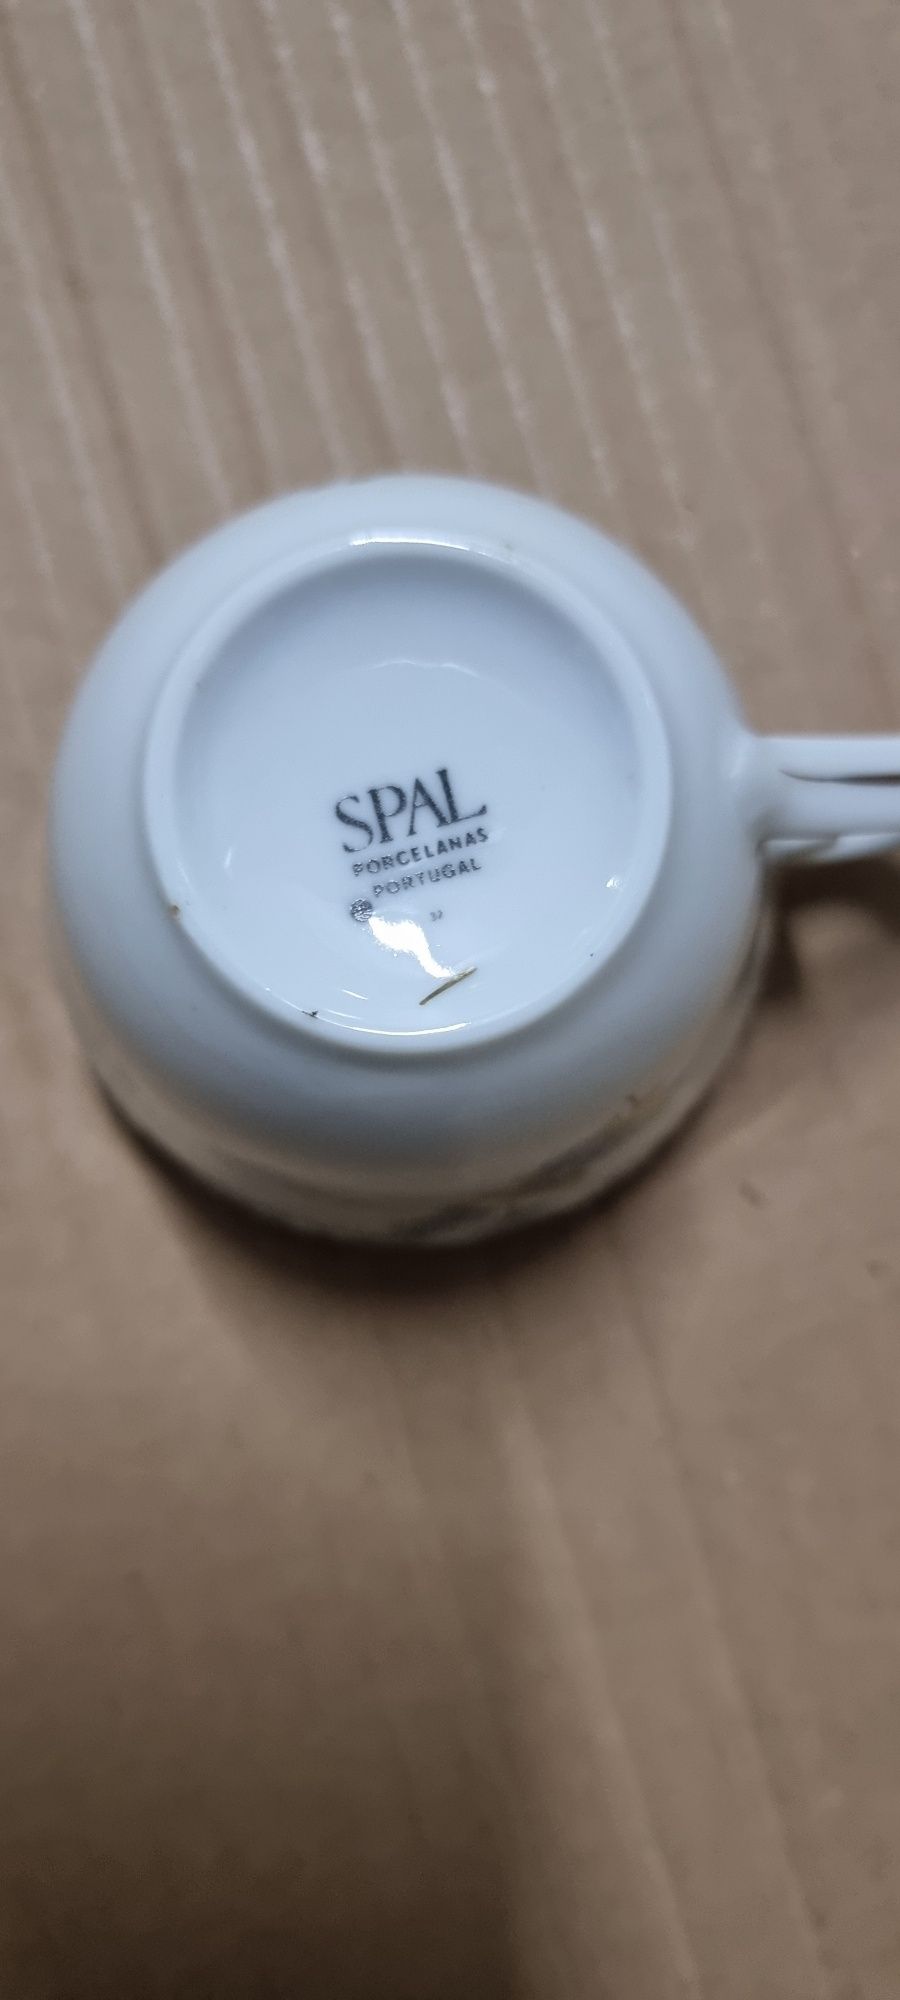 Serviço de chá da SPAL em porcelana